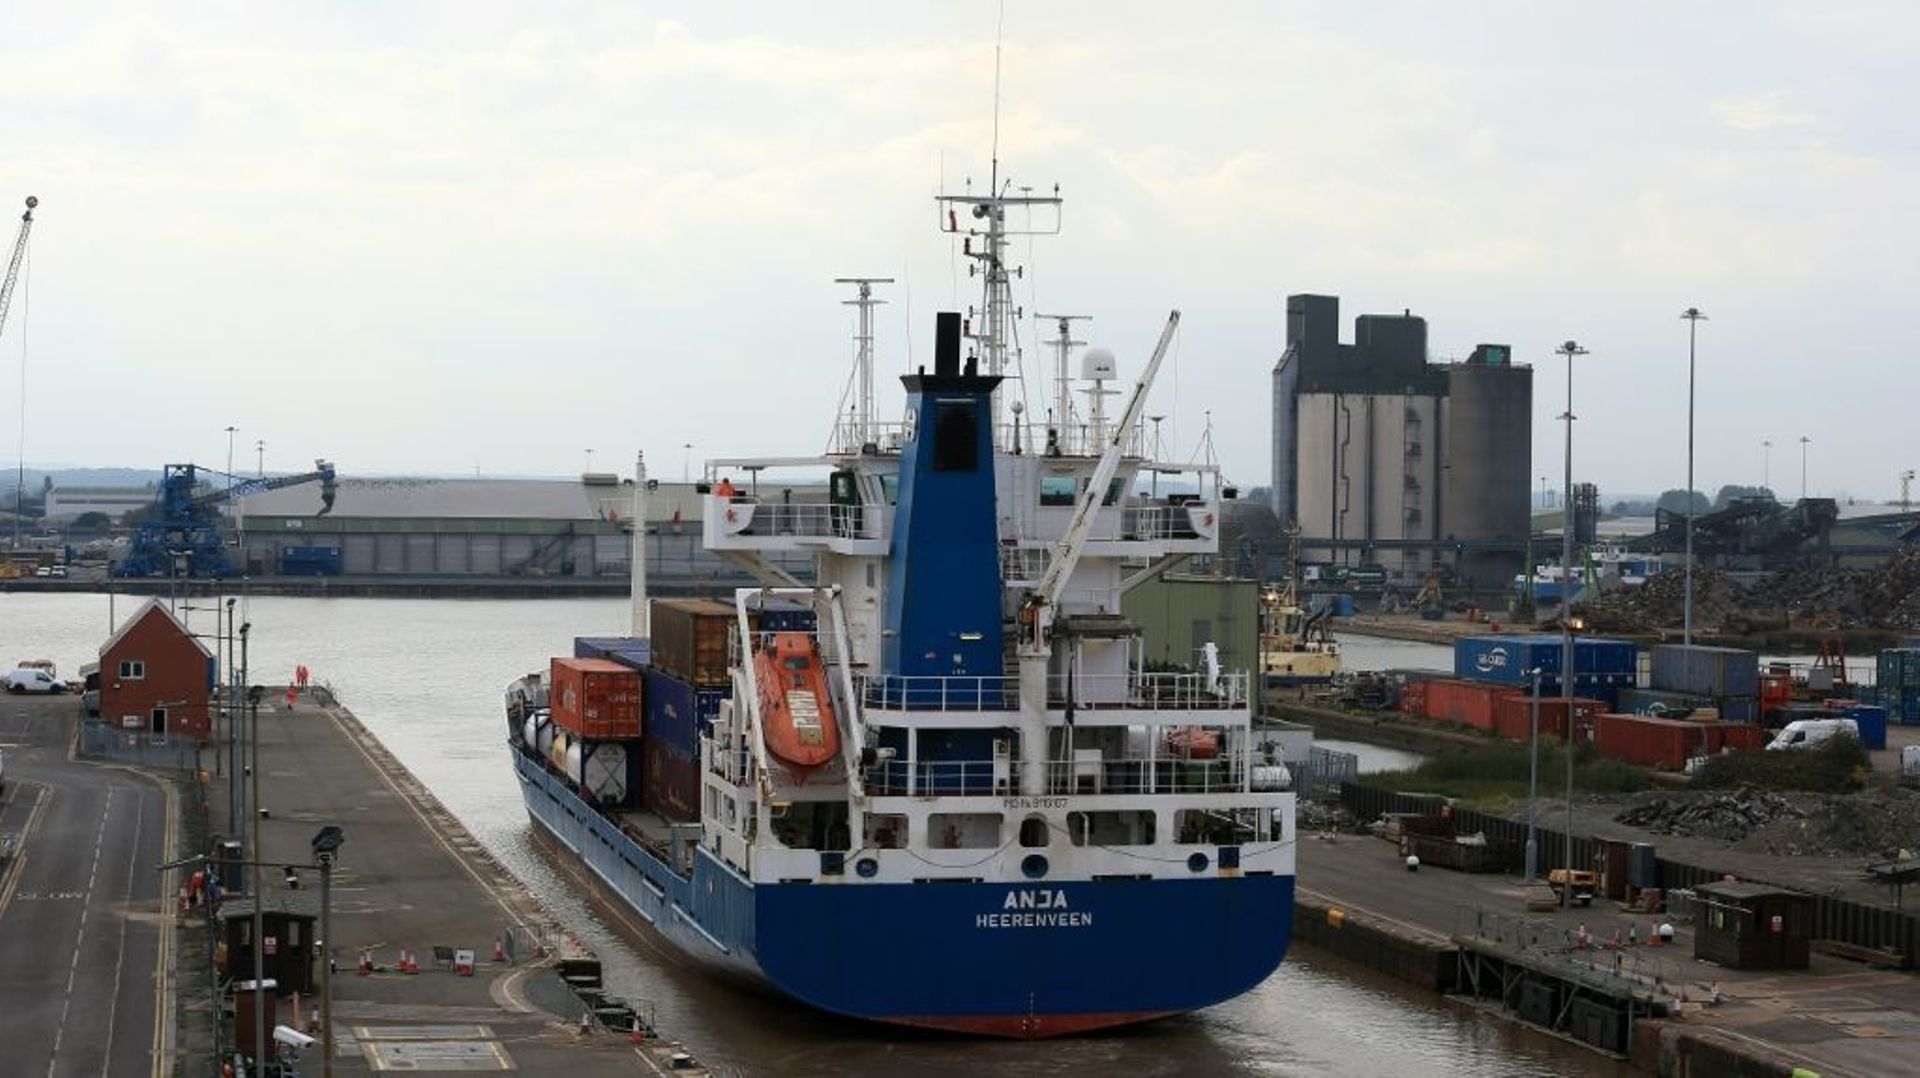 Les ports du nord de l'Angleterre rêvent d'une prospérité retrouvée grâce au Brexit